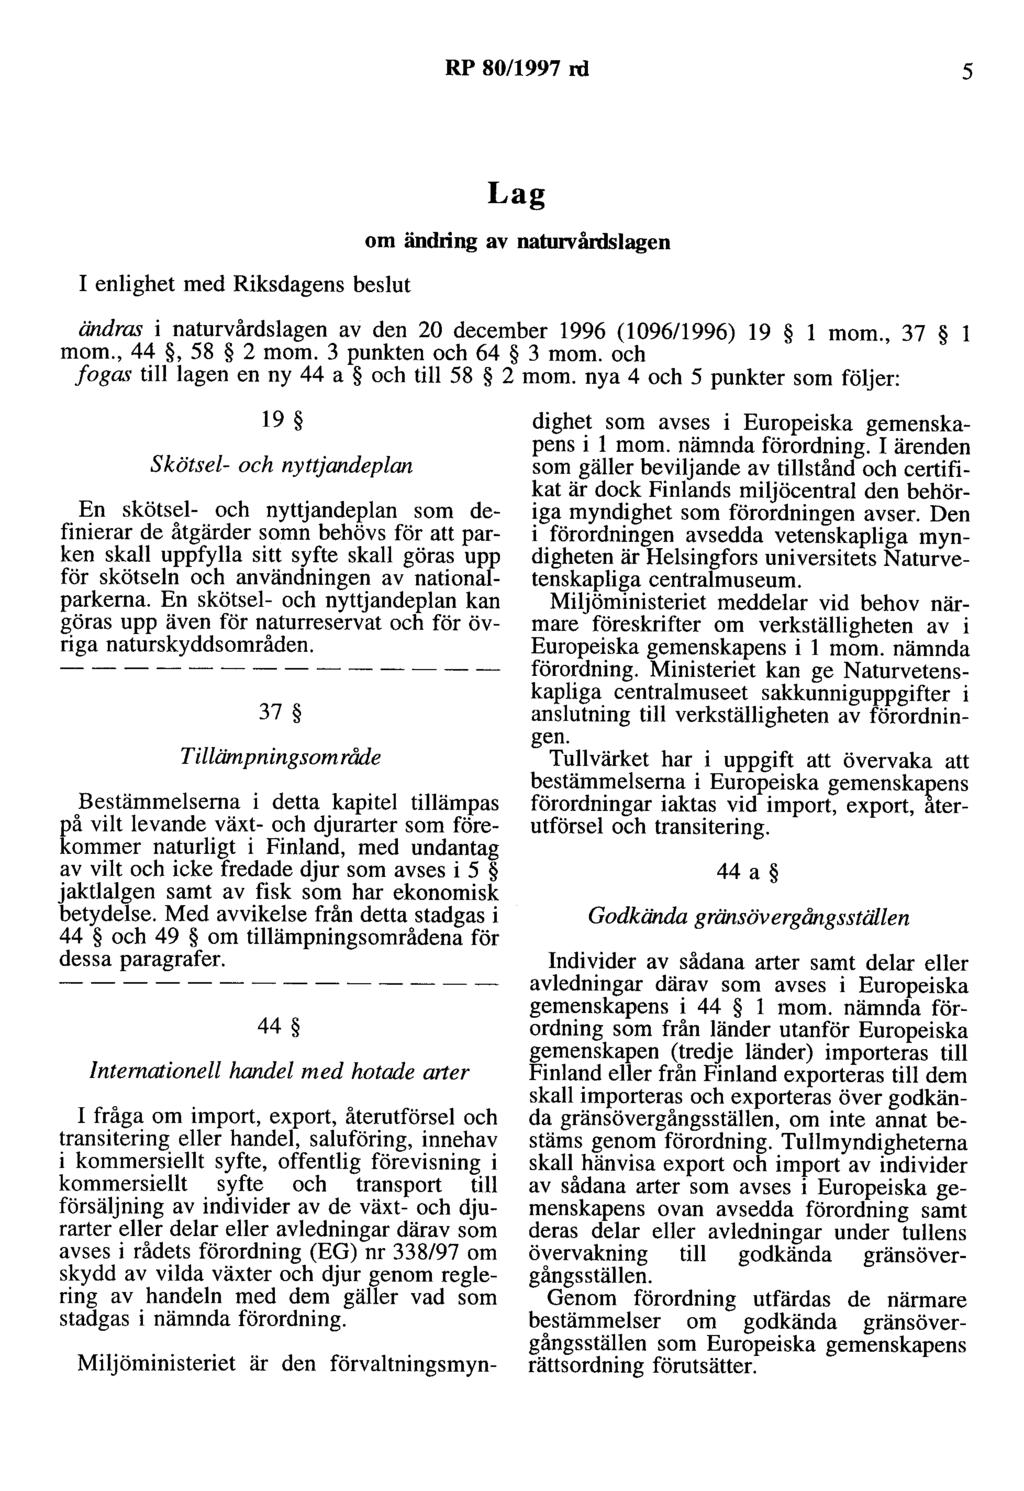 RP 80/1997 rd 5 I enlighet med Riksdagens beslut Lag om ändring av natunrårdslagen ändrru i naturvårdslagen av den 20 december 1996 (1096/1996) 19 l mom., 37 l mom., 44, 58 2 mom.